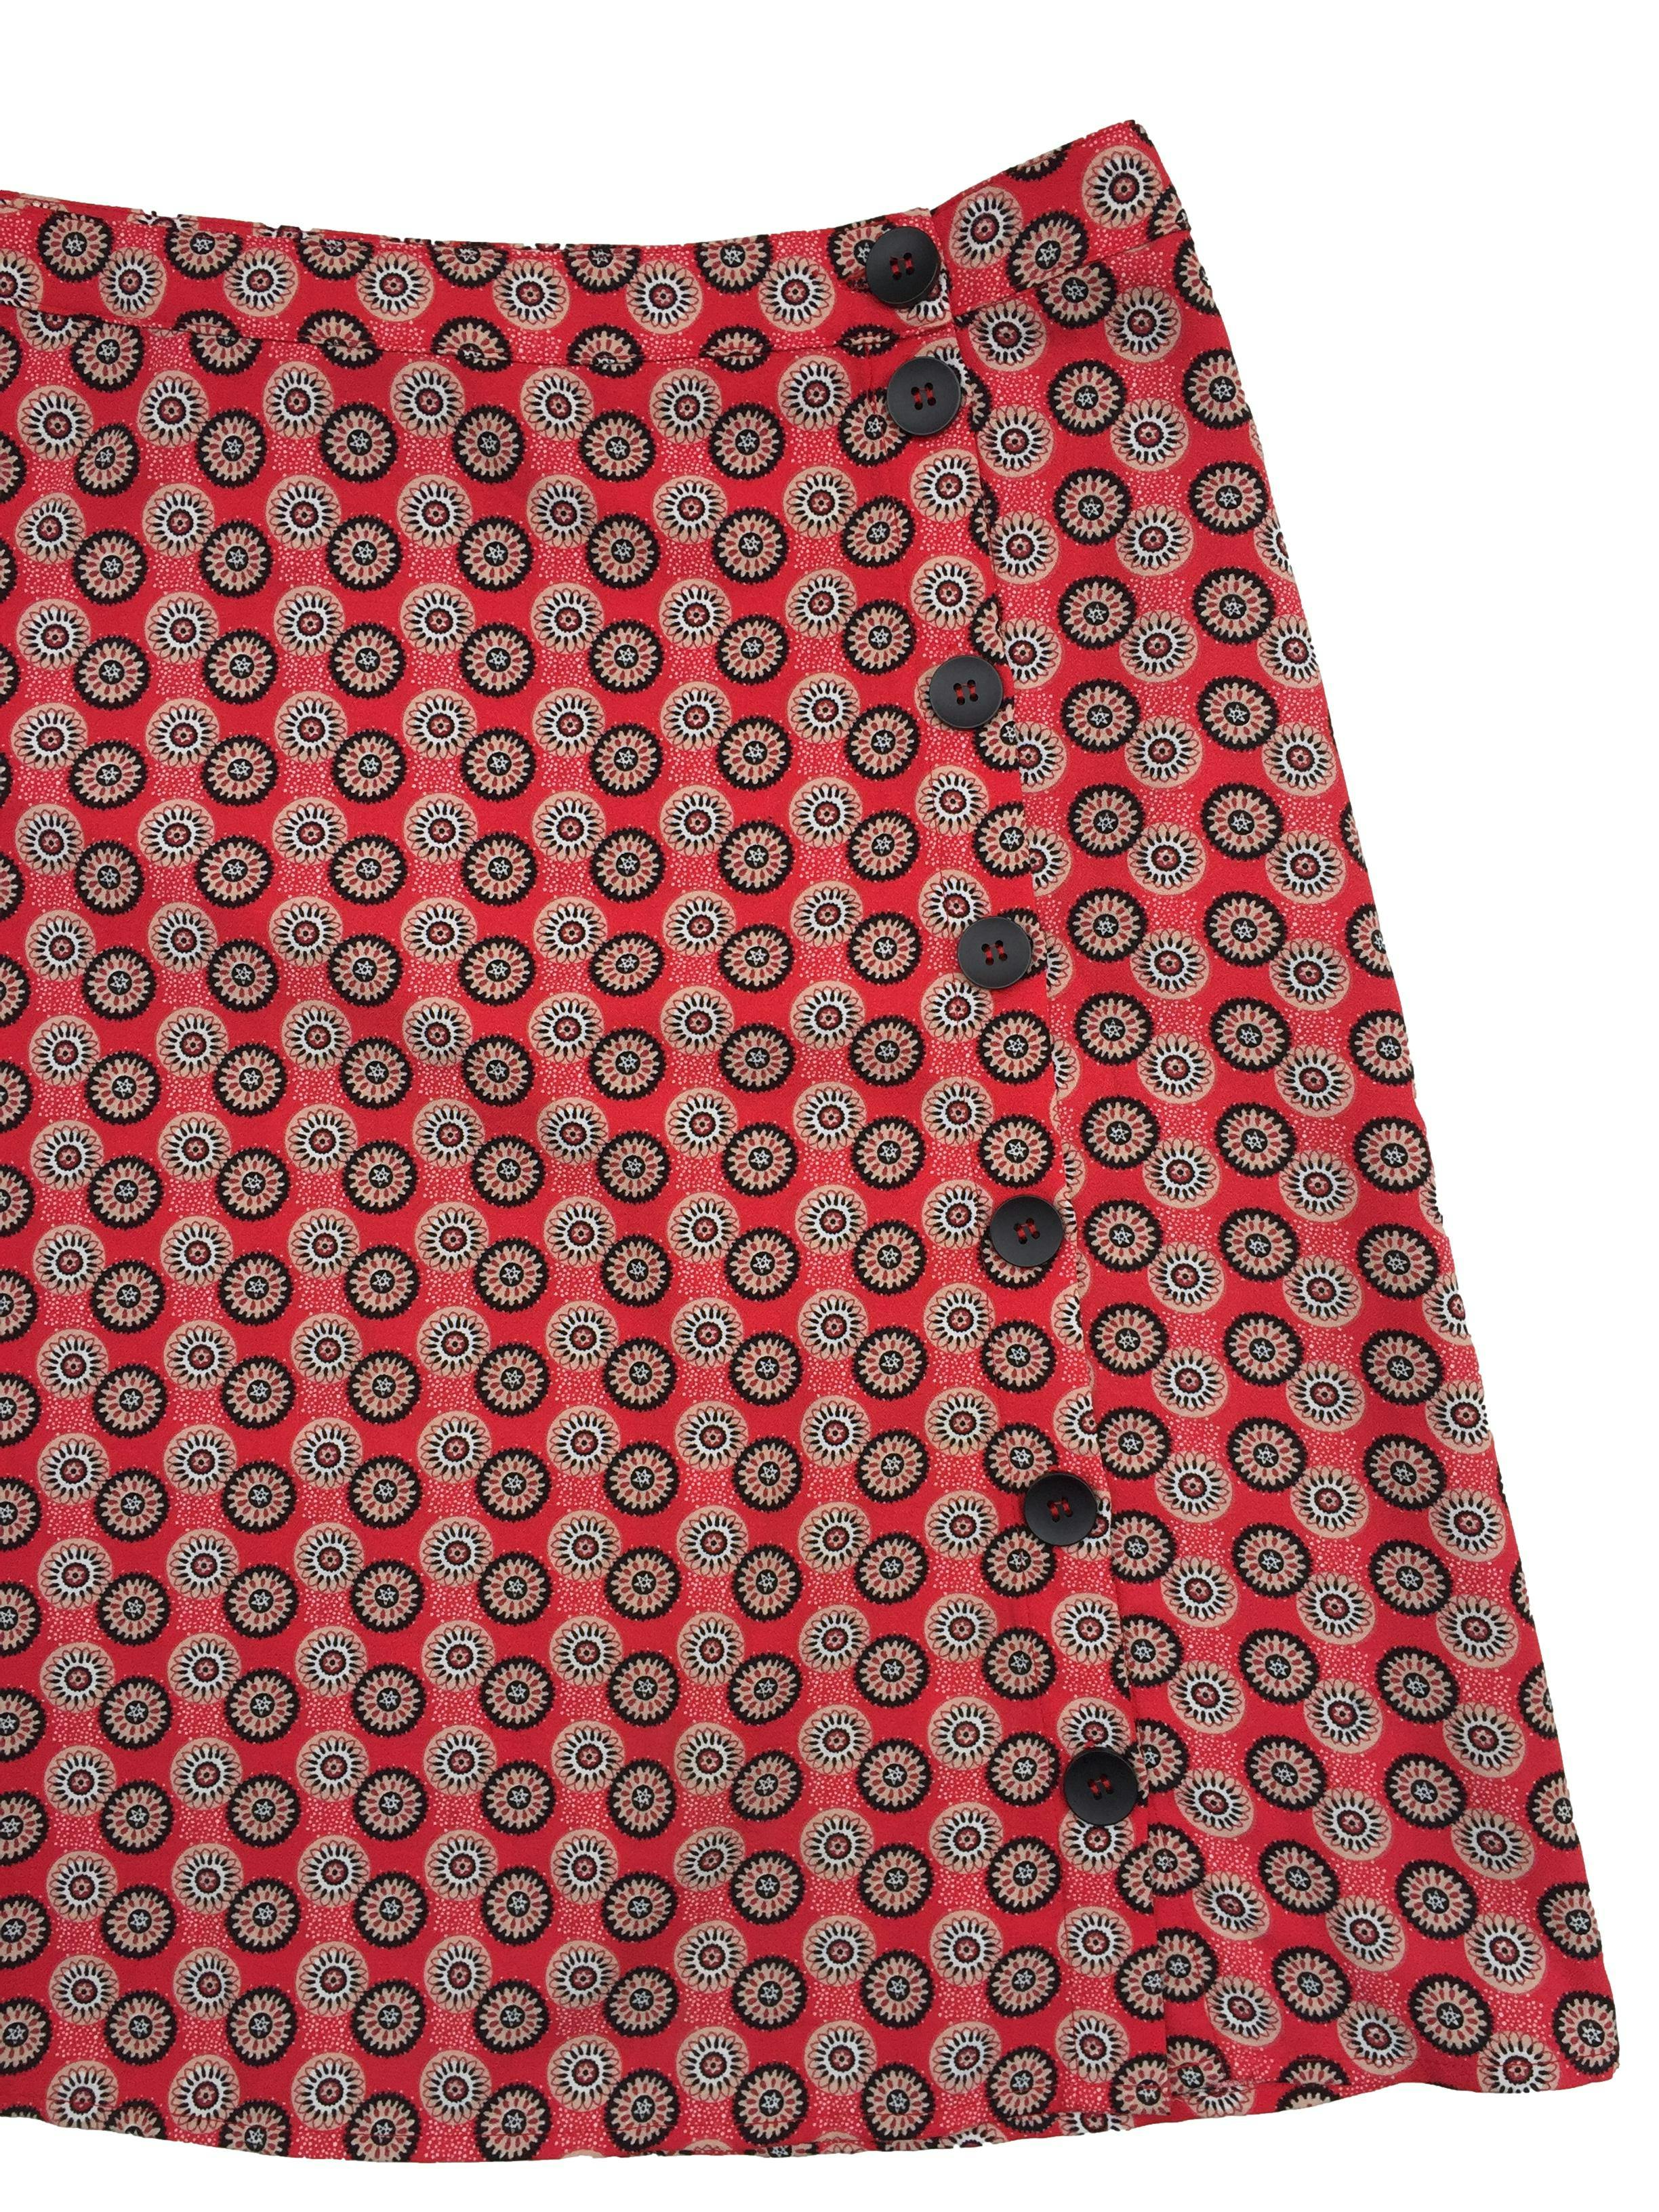 Falda Vila roja con estampado círculos negros y beige, botones laterales, corte en A. Cintura 82cm Largo 55cm